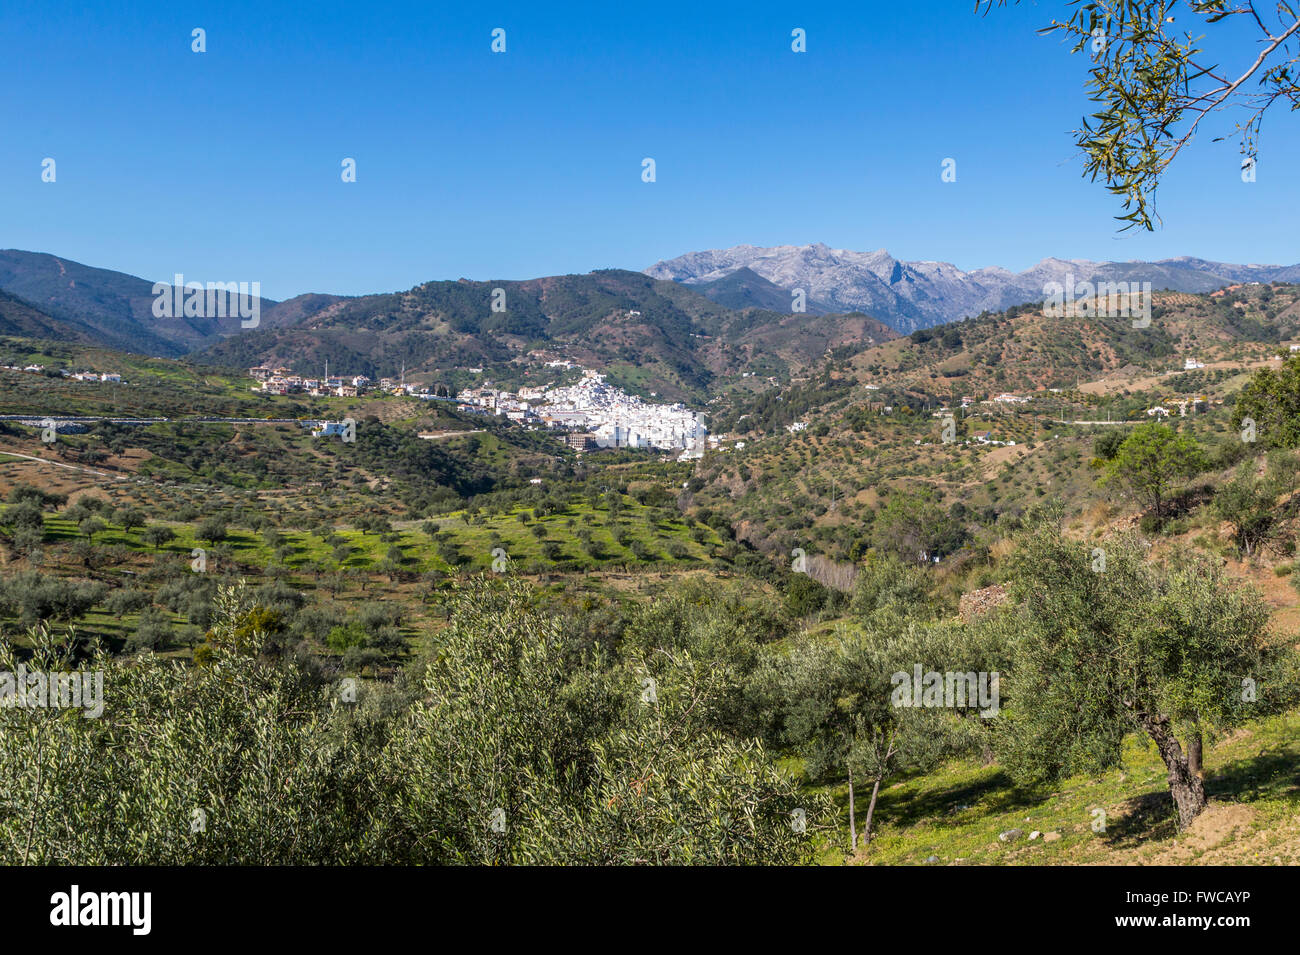 Tolox, Provinz Malaga, Andalusien, Südspanien.  Typischen, weiß getünchten Bergstadt.  Tolox ist als Kurort berühmt. Stockfoto